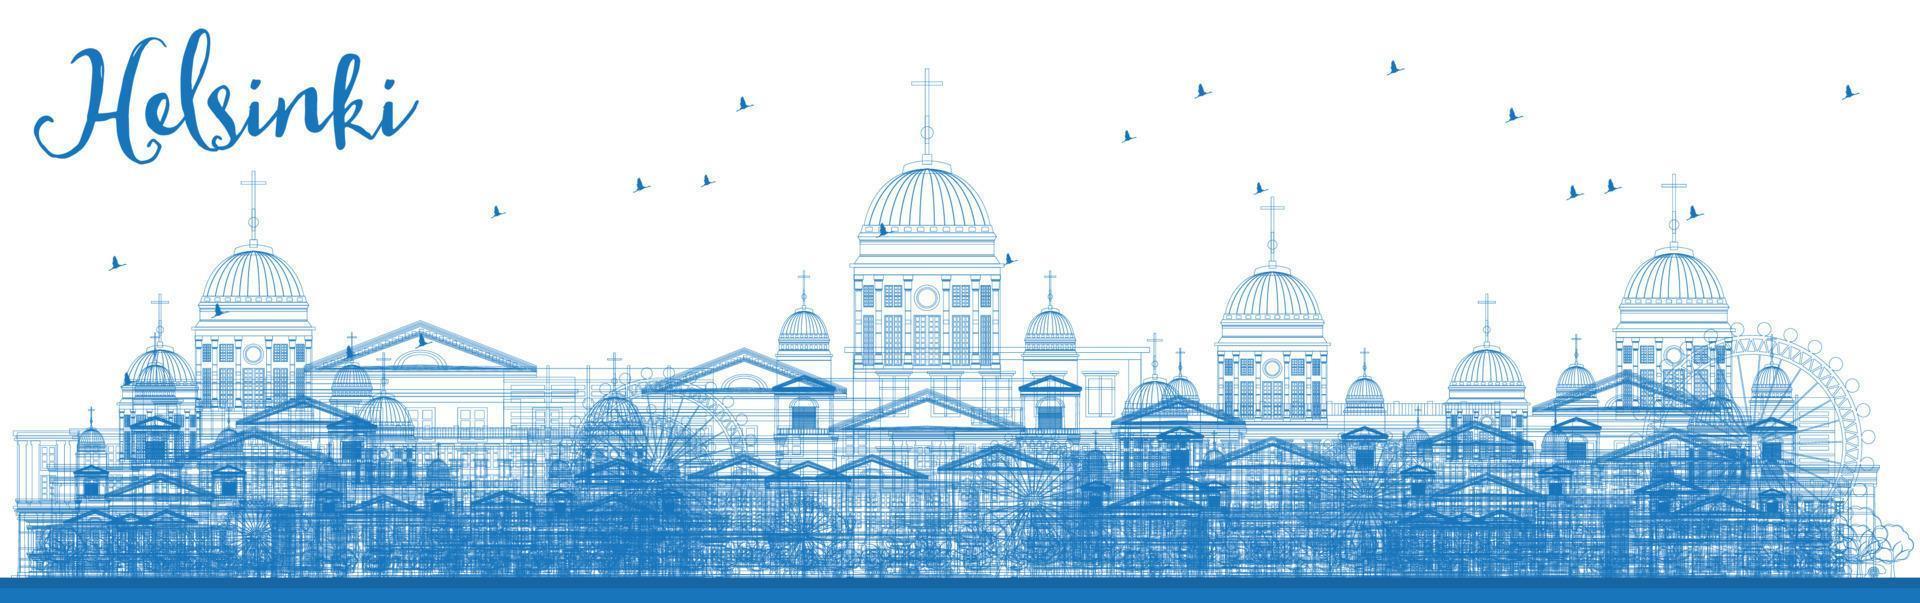 delineare lo skyline di Helsinki con edifici blu. vettore